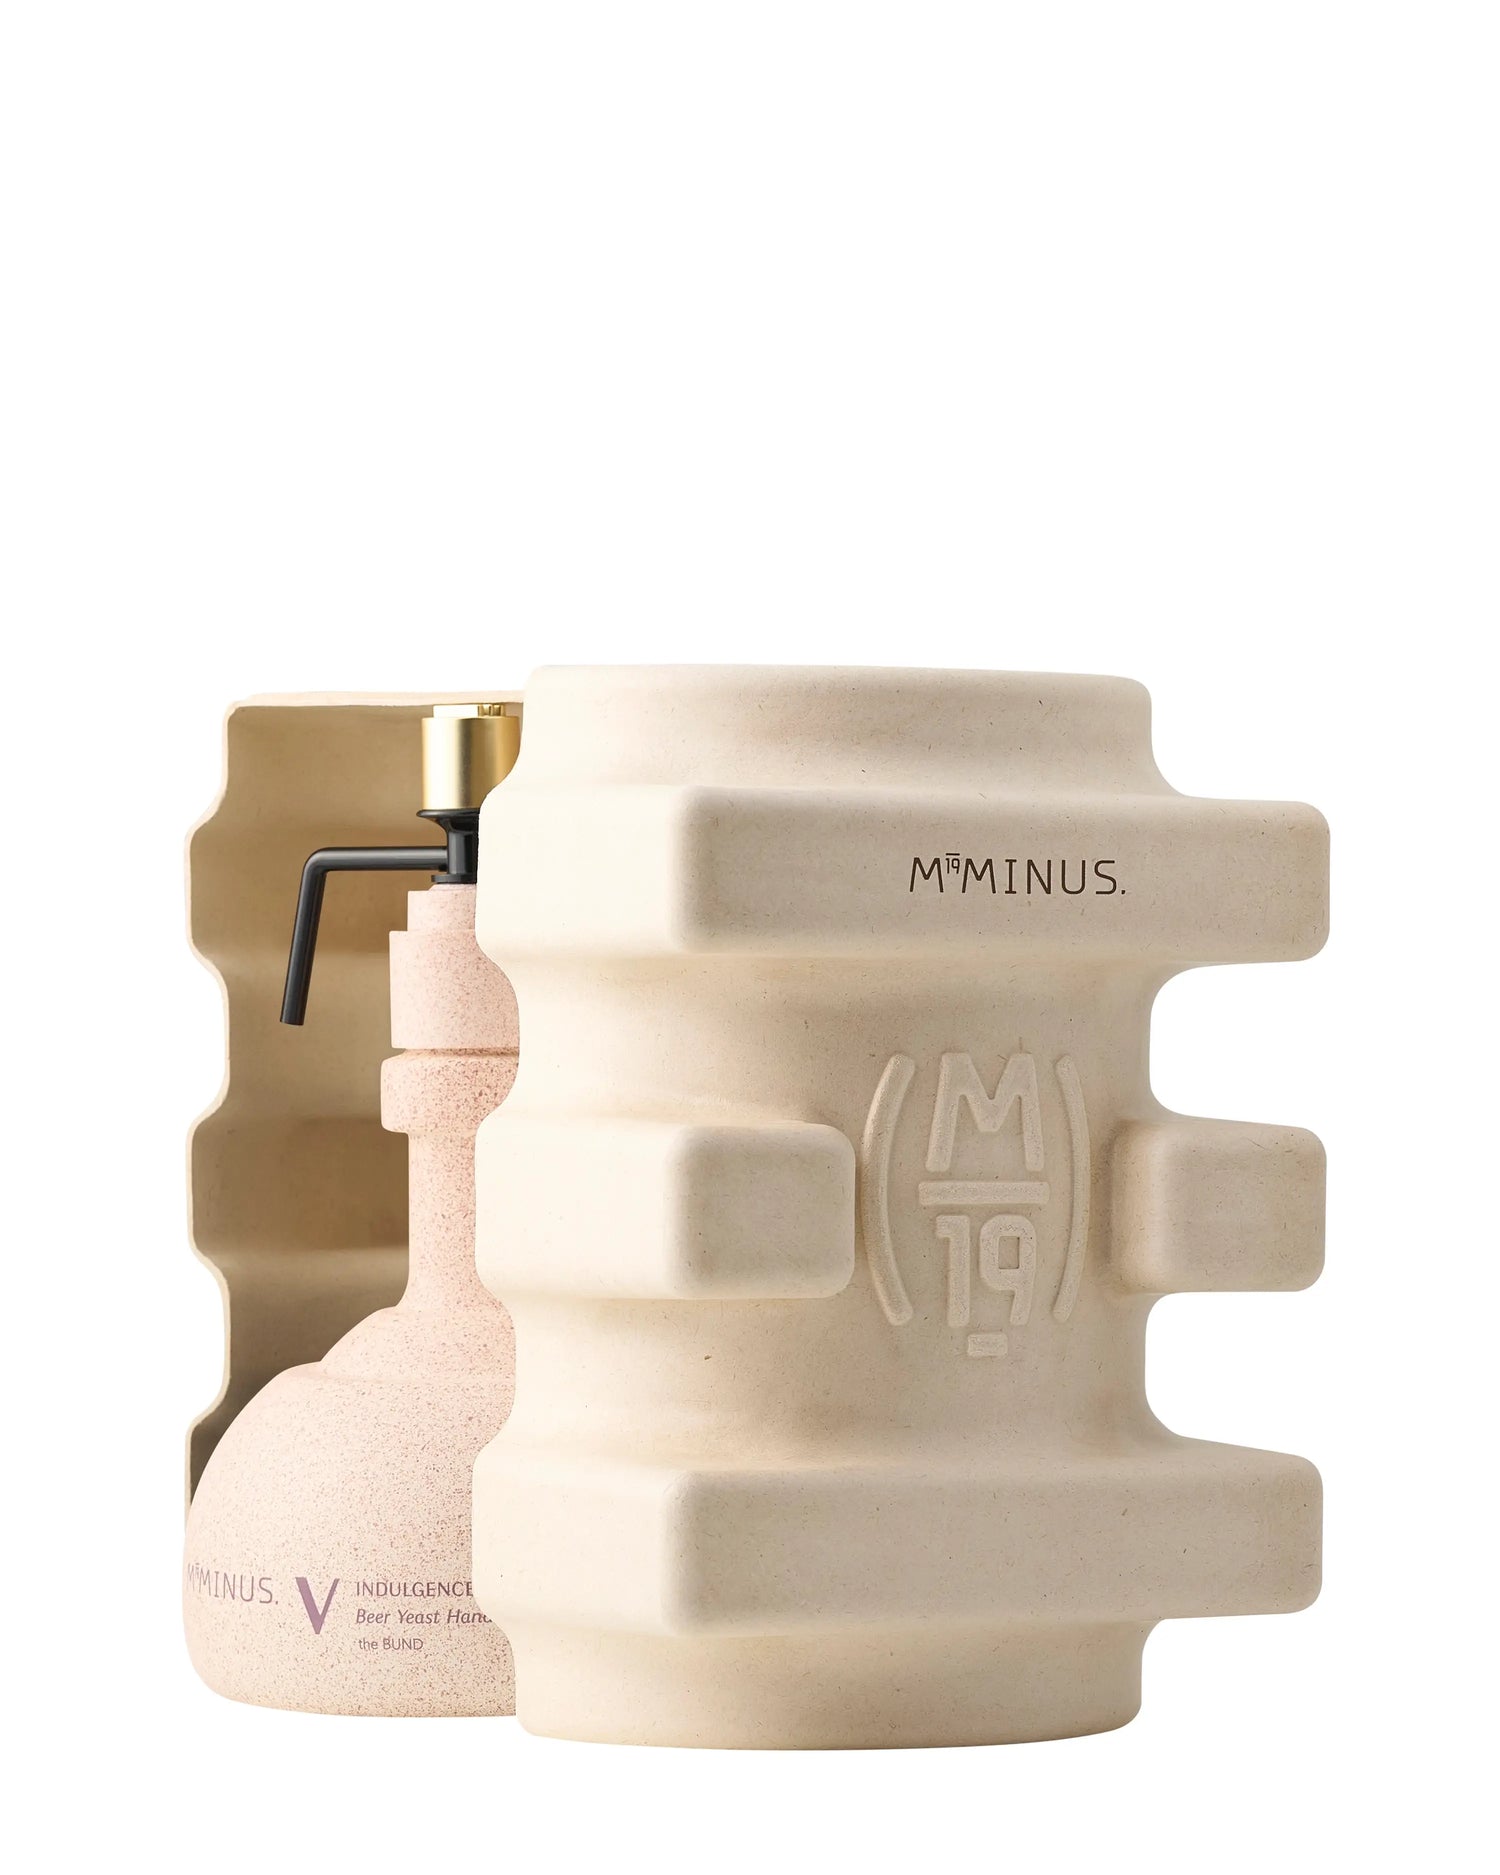 M19Minus the BUND - V Indulgence Beer Yeast Hand Essence+ - Hand Cream